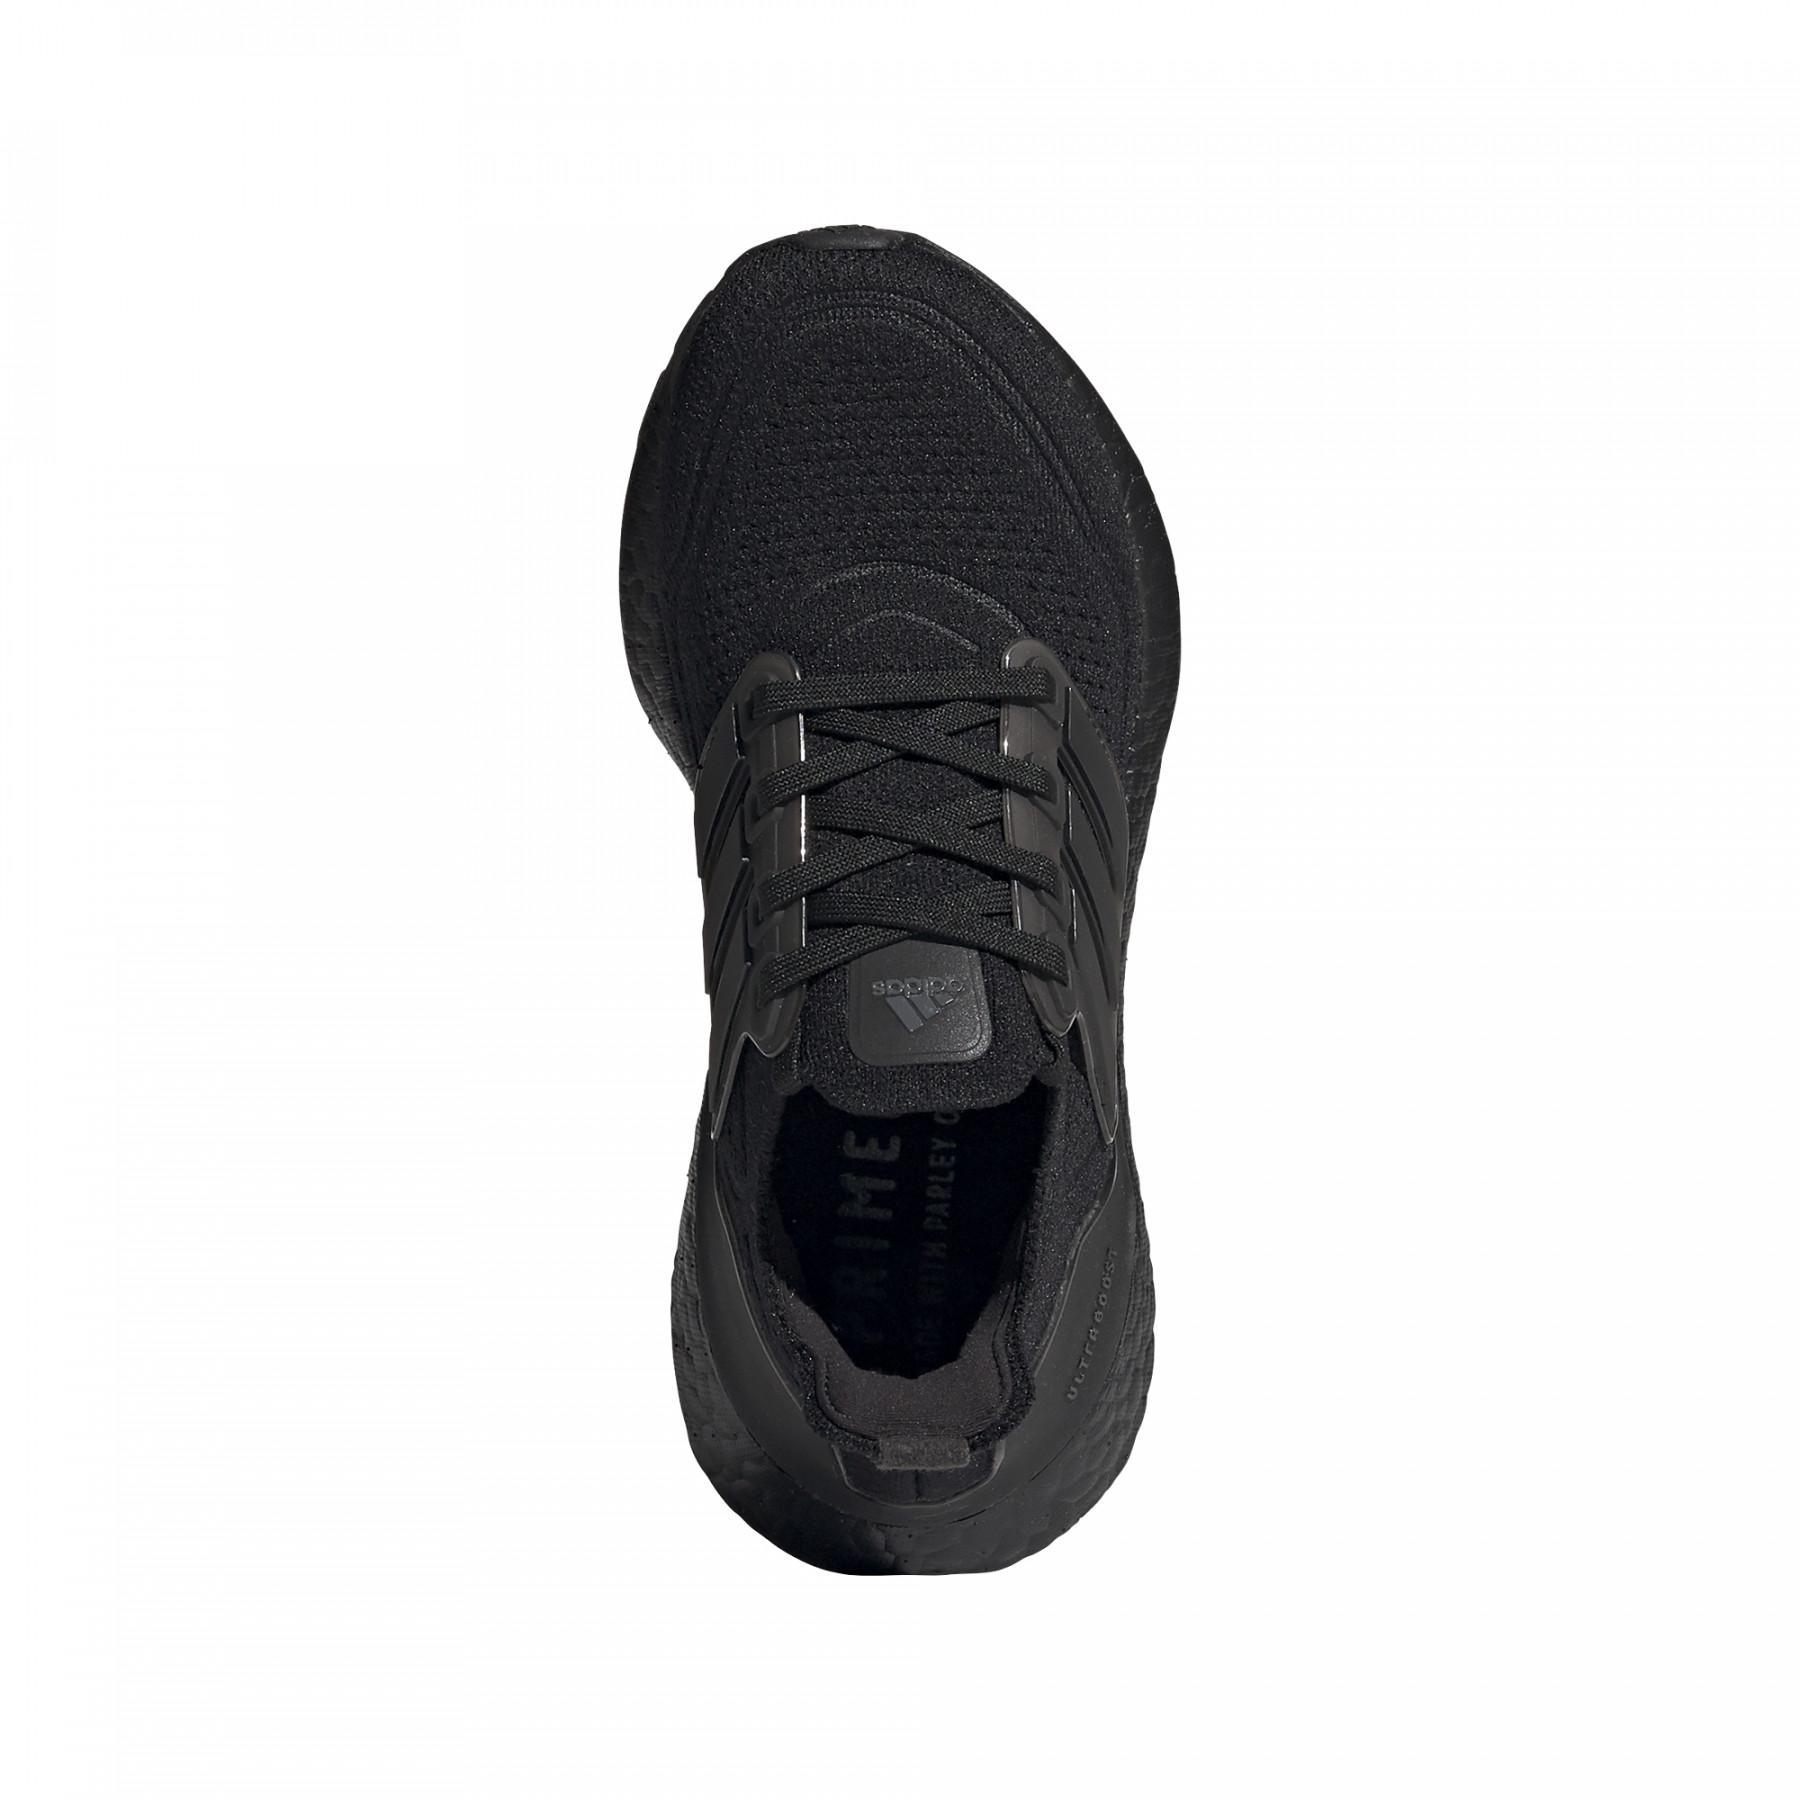 Chaussures de running enfant adidas Ultraboost 21 J